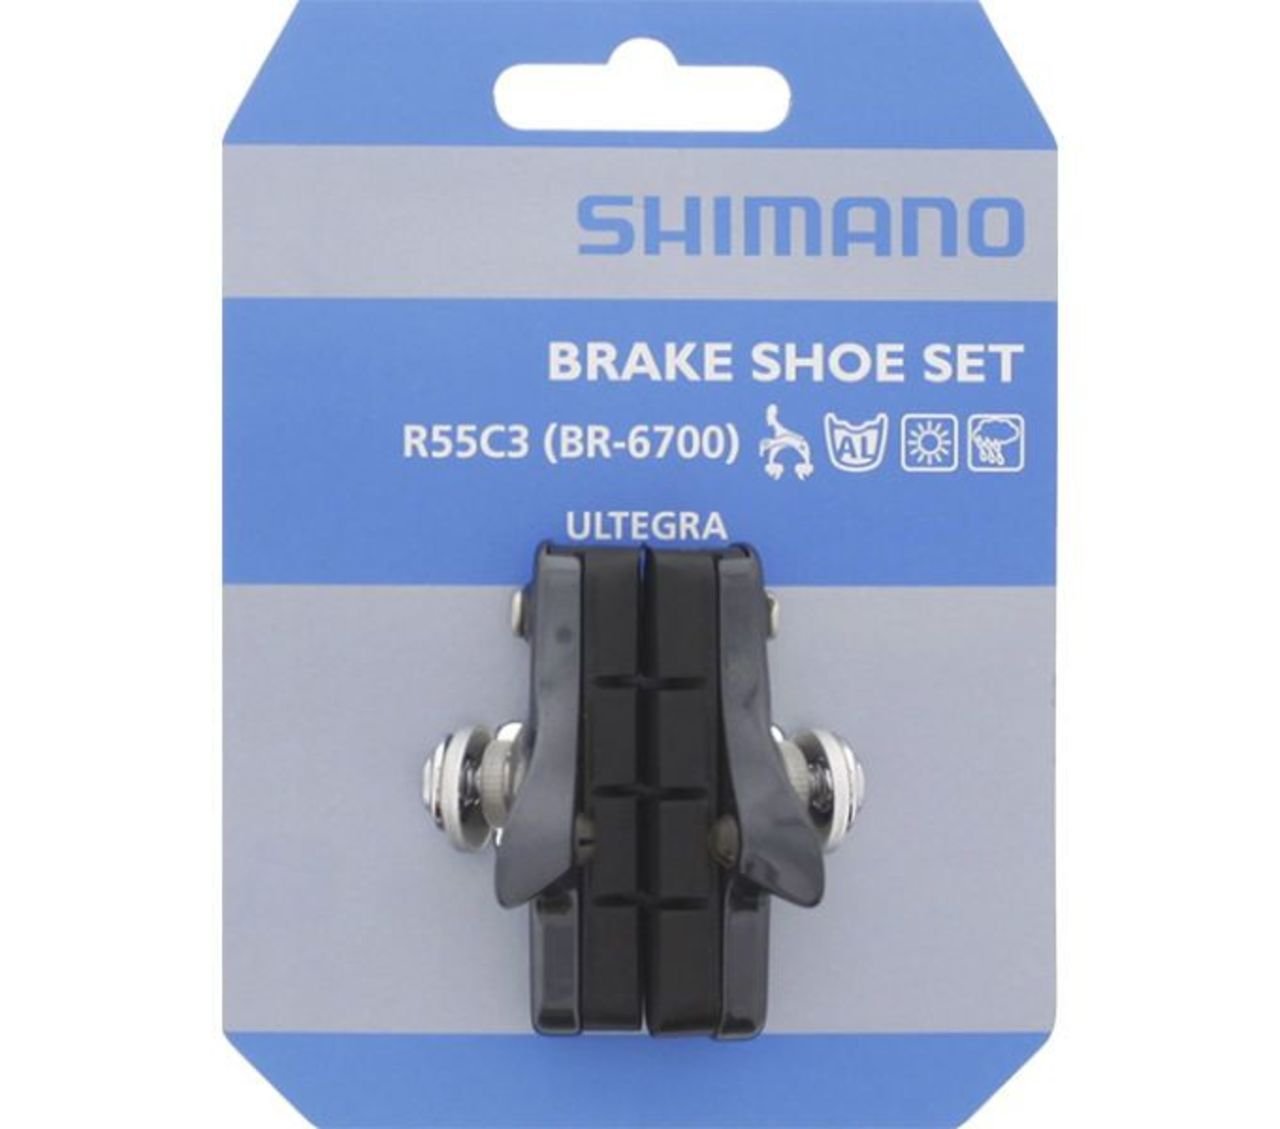 Тормозные колодки Shimano, brake pad, R55C3, Cartridge, for BR-6700, for aluminium rim, 1 pair, A154773 вкладыш тормозной колодки шоссейный r55c3 2 пары для da ultegra 105 y8fn98092